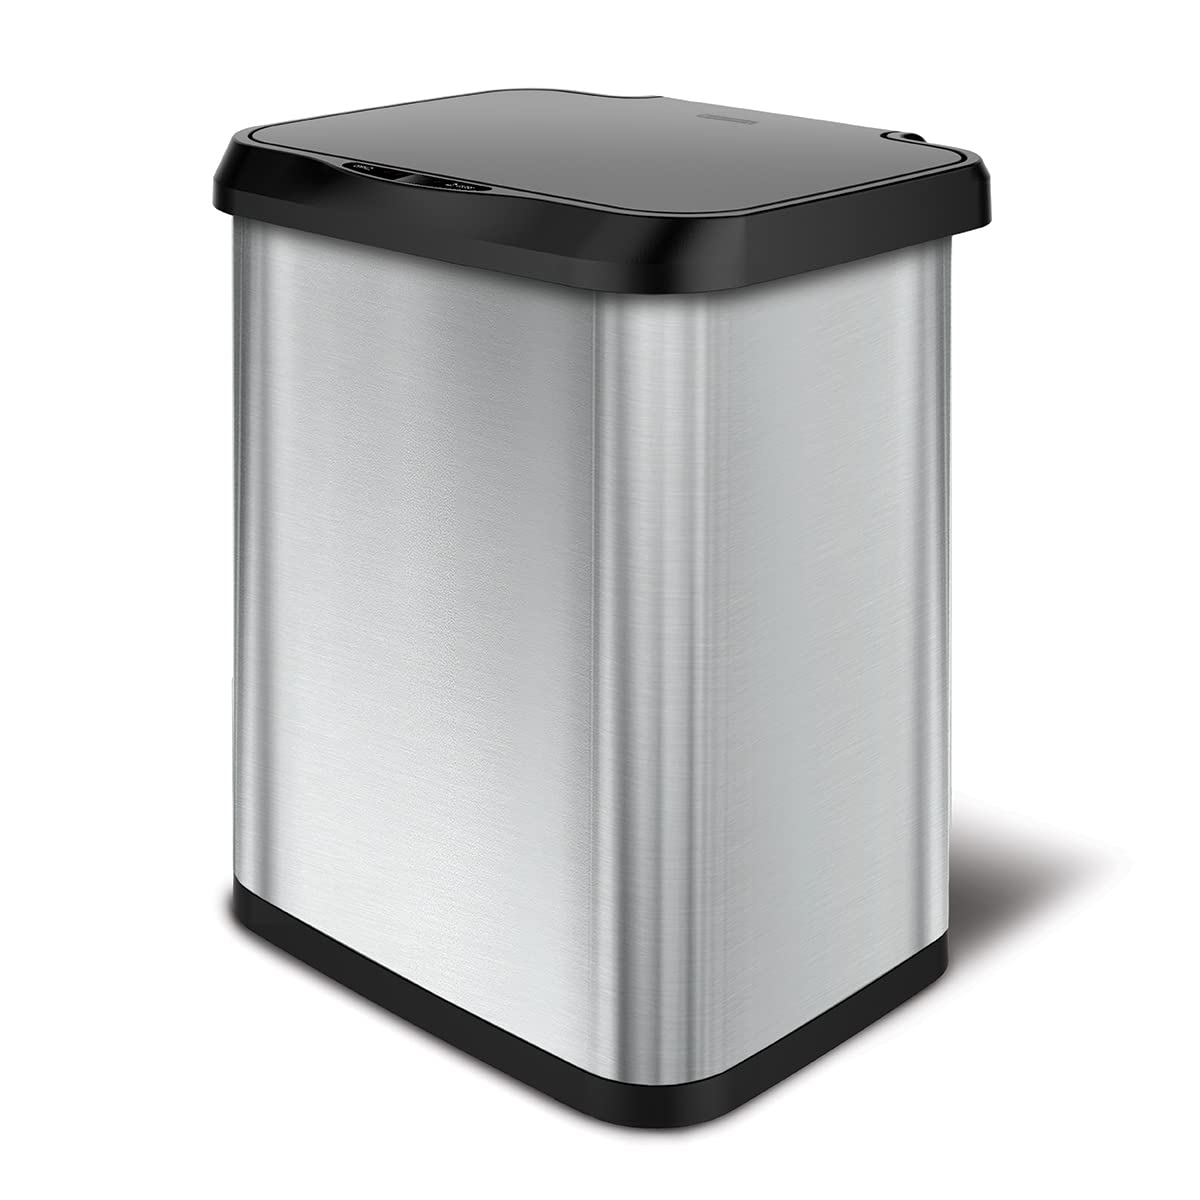 Glad Edelstahl-Mülleimer mit Geruchsschutz | Großer Küchenabfallbehälter aus Metall mit Soft-Close-Deckel und Abfallbeutelrollenhalter